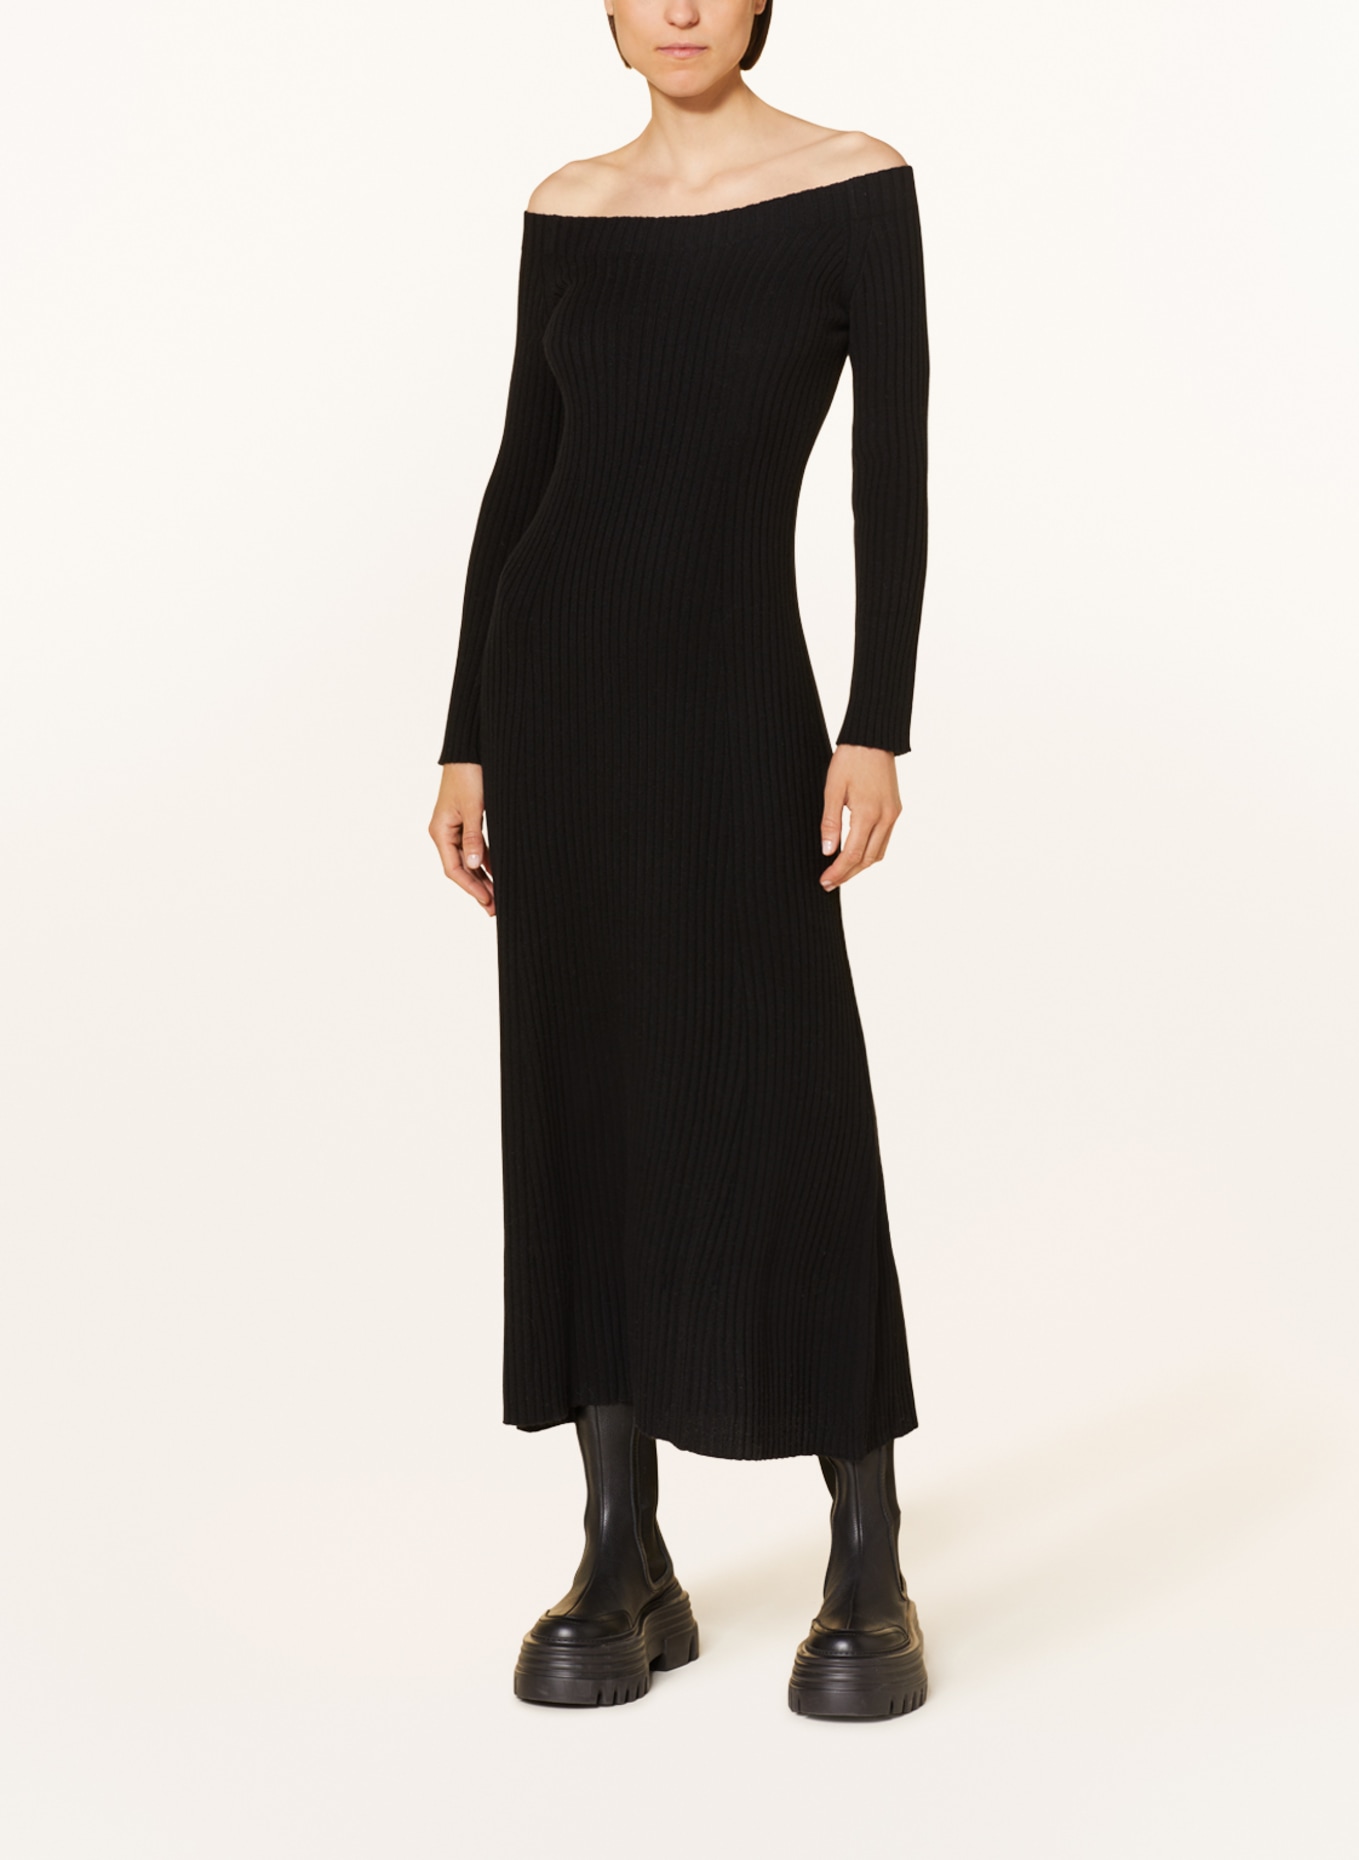 LISA YANG Knit dress MARVIN in cashmere, Color: BLACK (Image 2)